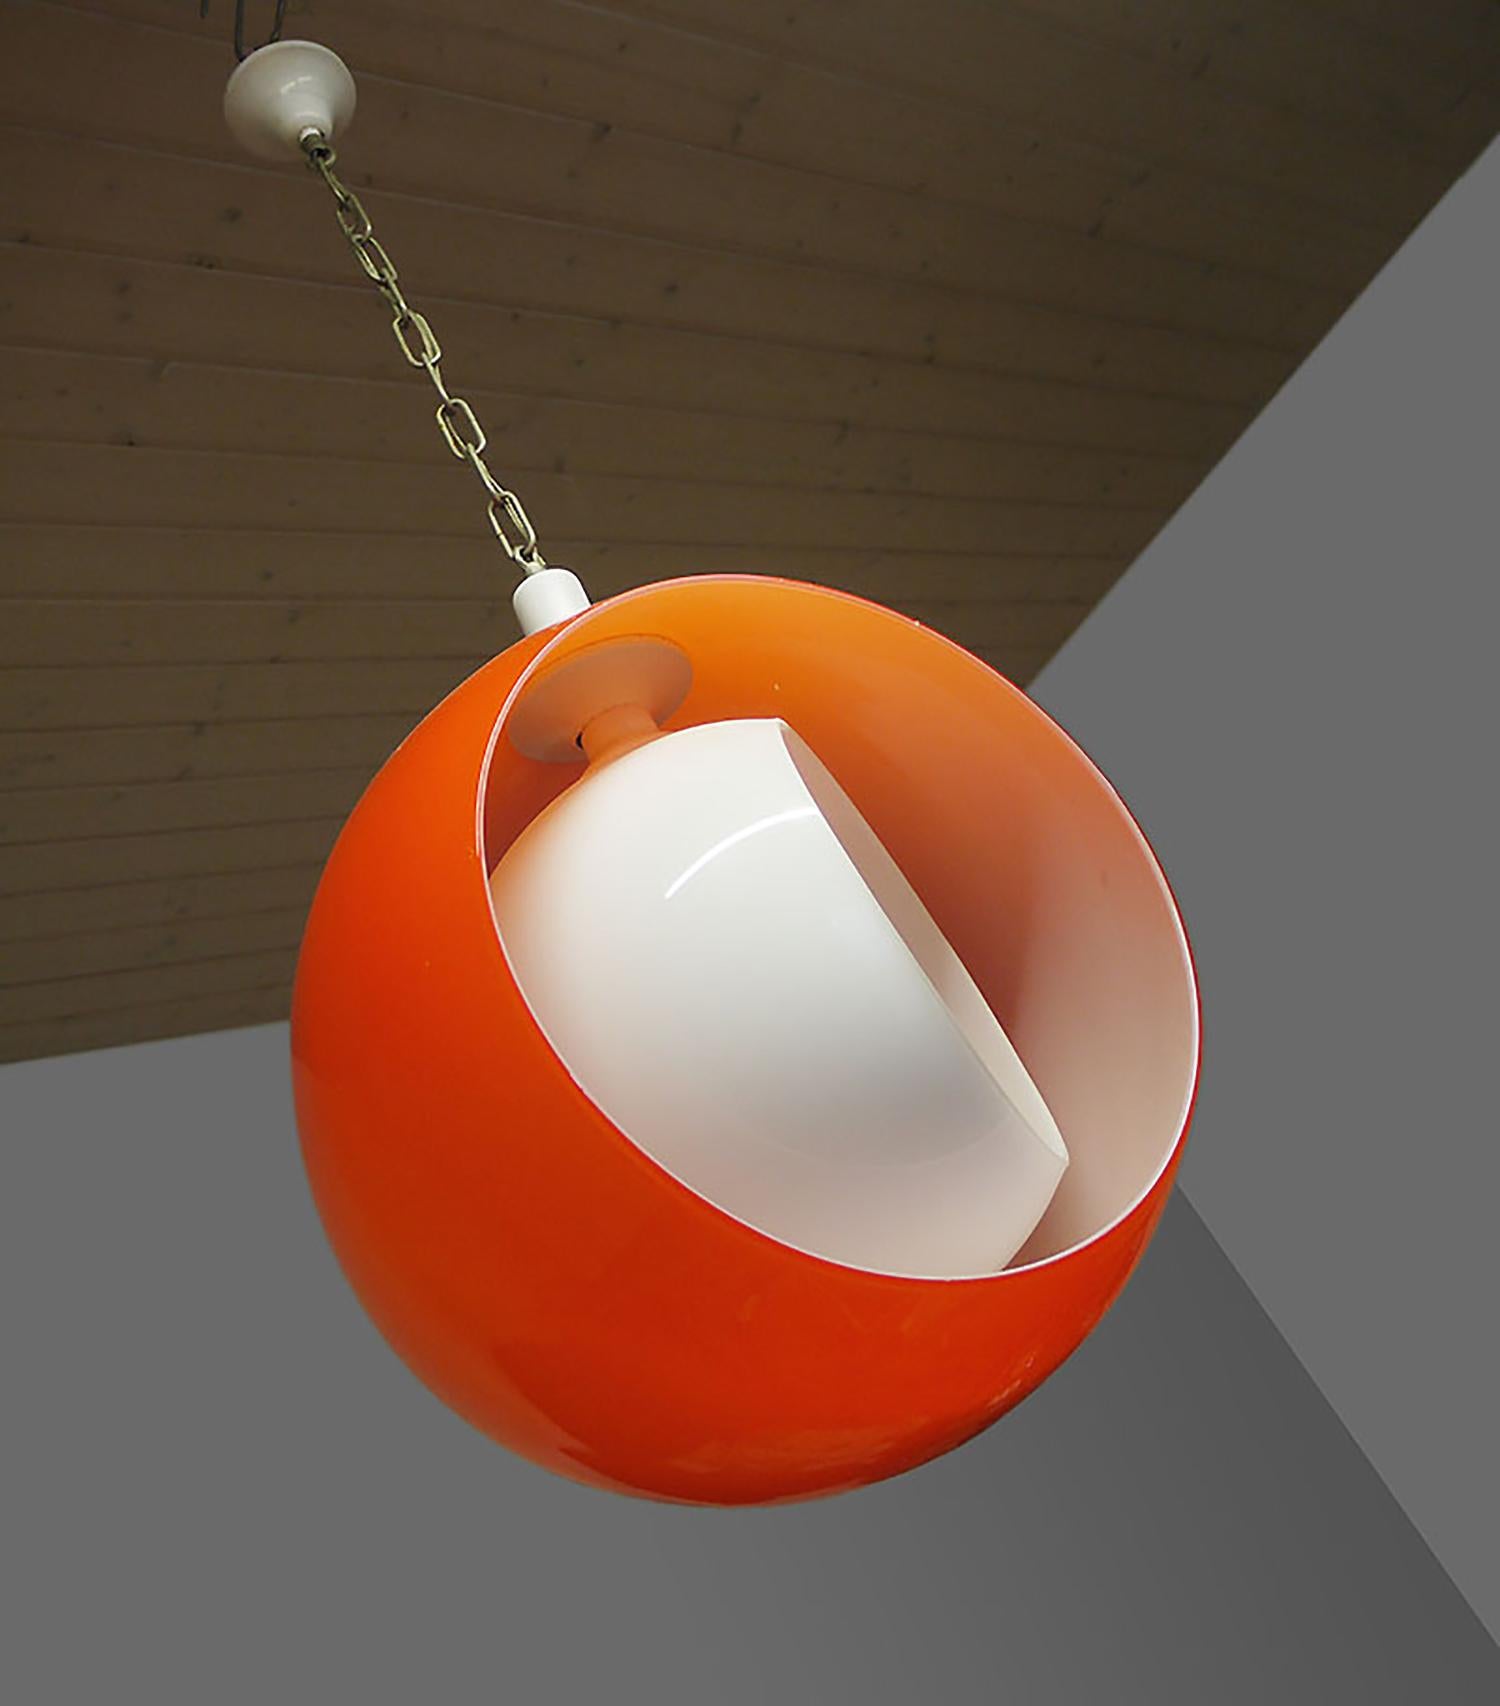 Murano Glass Moon Pendant Lamp Orange & White by Carlo Nason for Mazzega 1960s For Sale 2